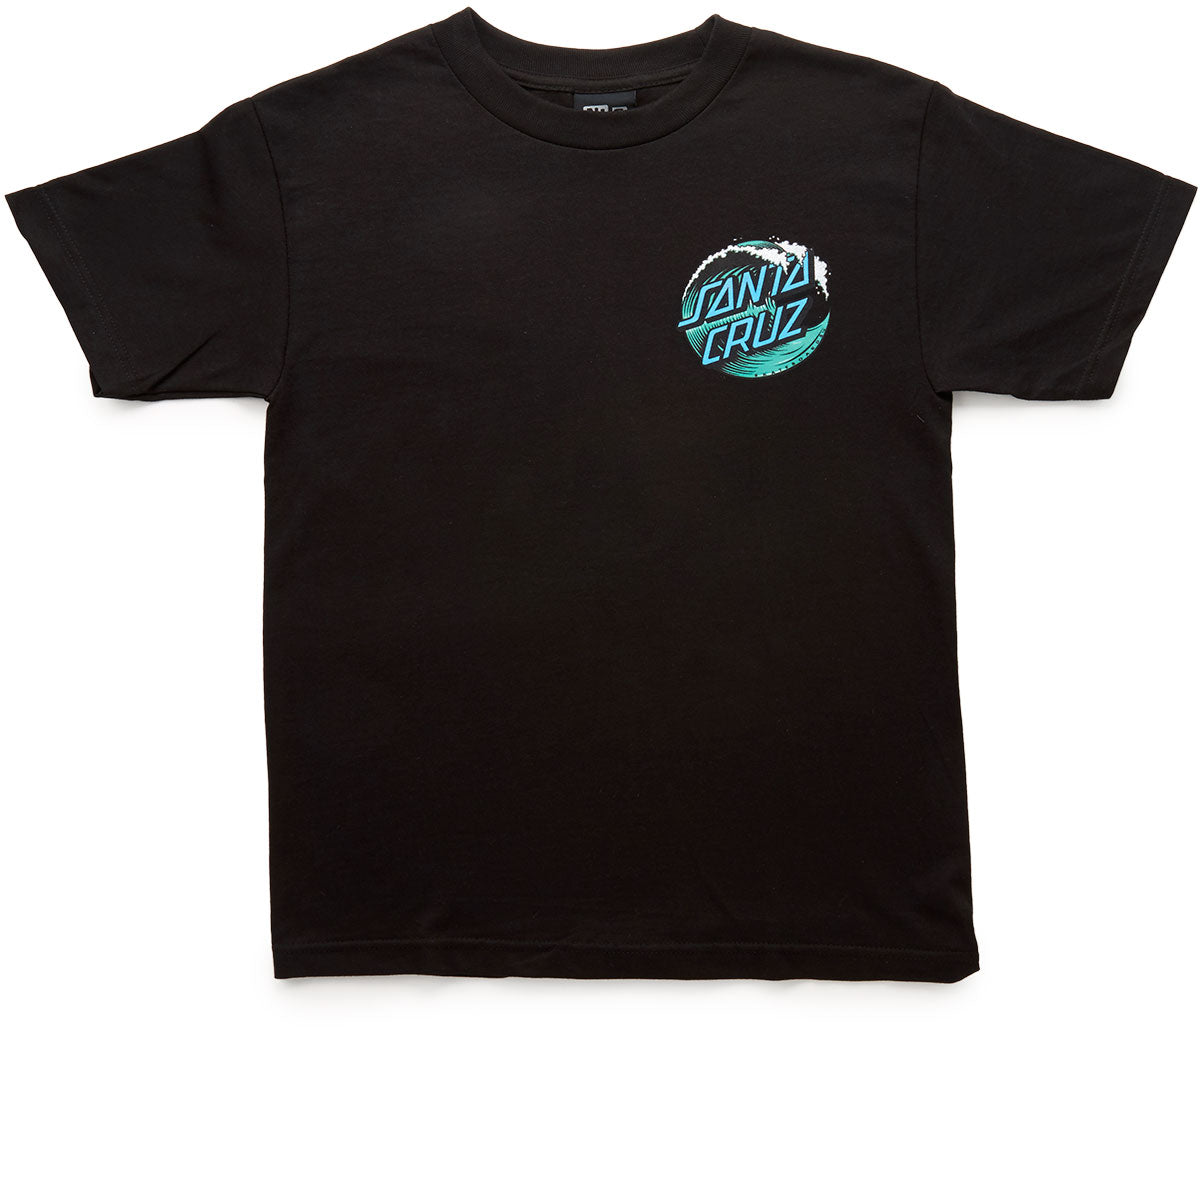 Santa Cruz Wave Dot T-Shirt - Black image 1